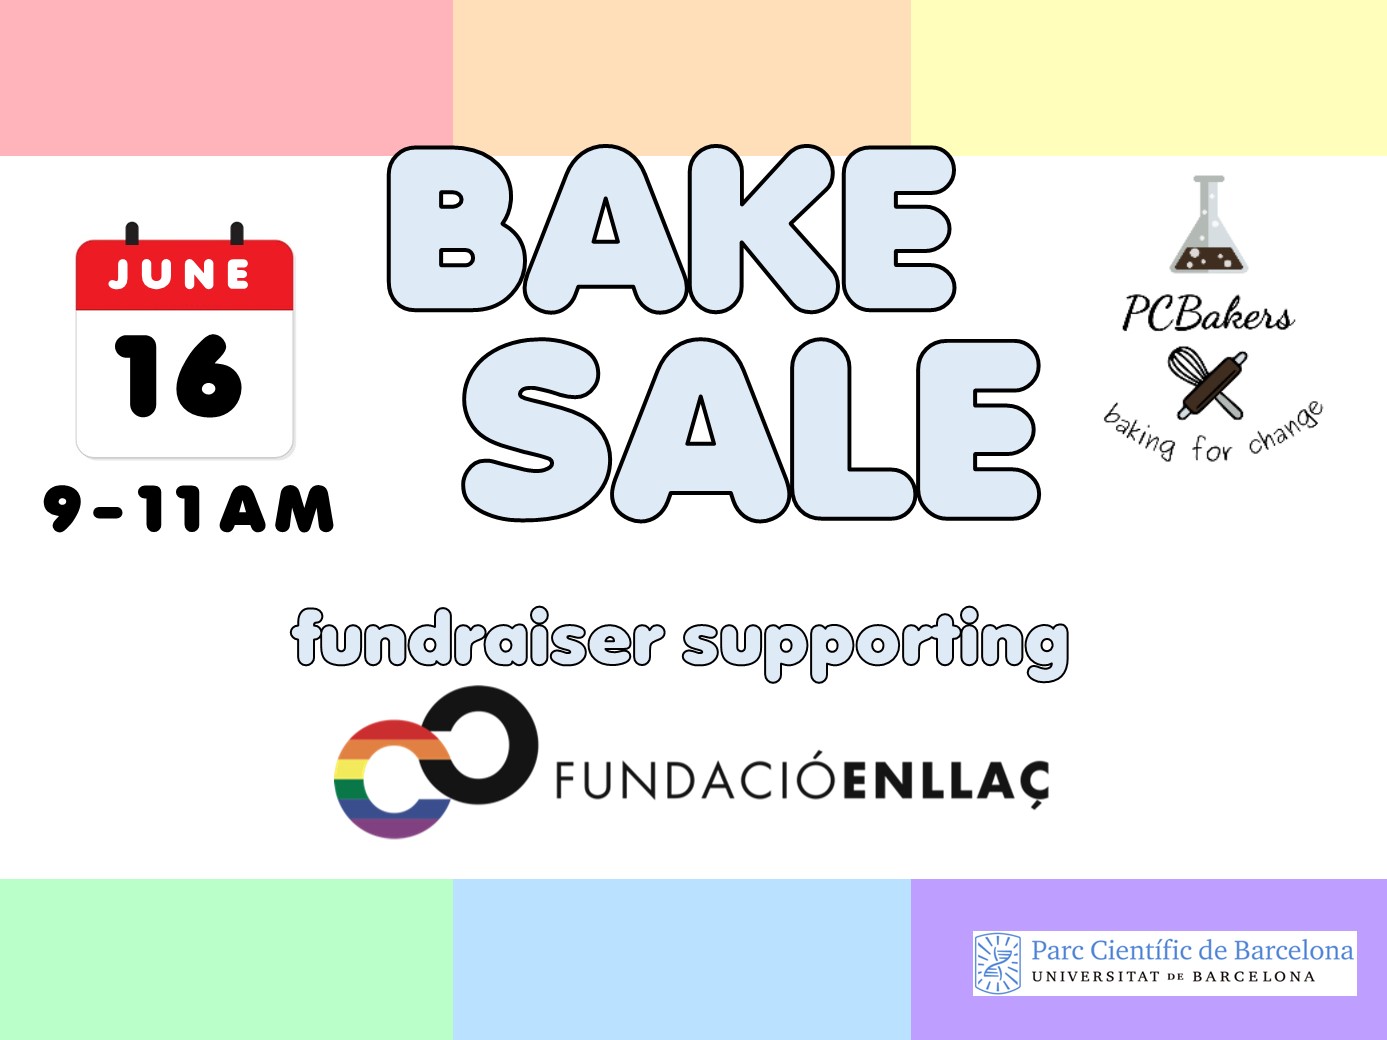 Bake Sale June 16th - Fundació Enllaç